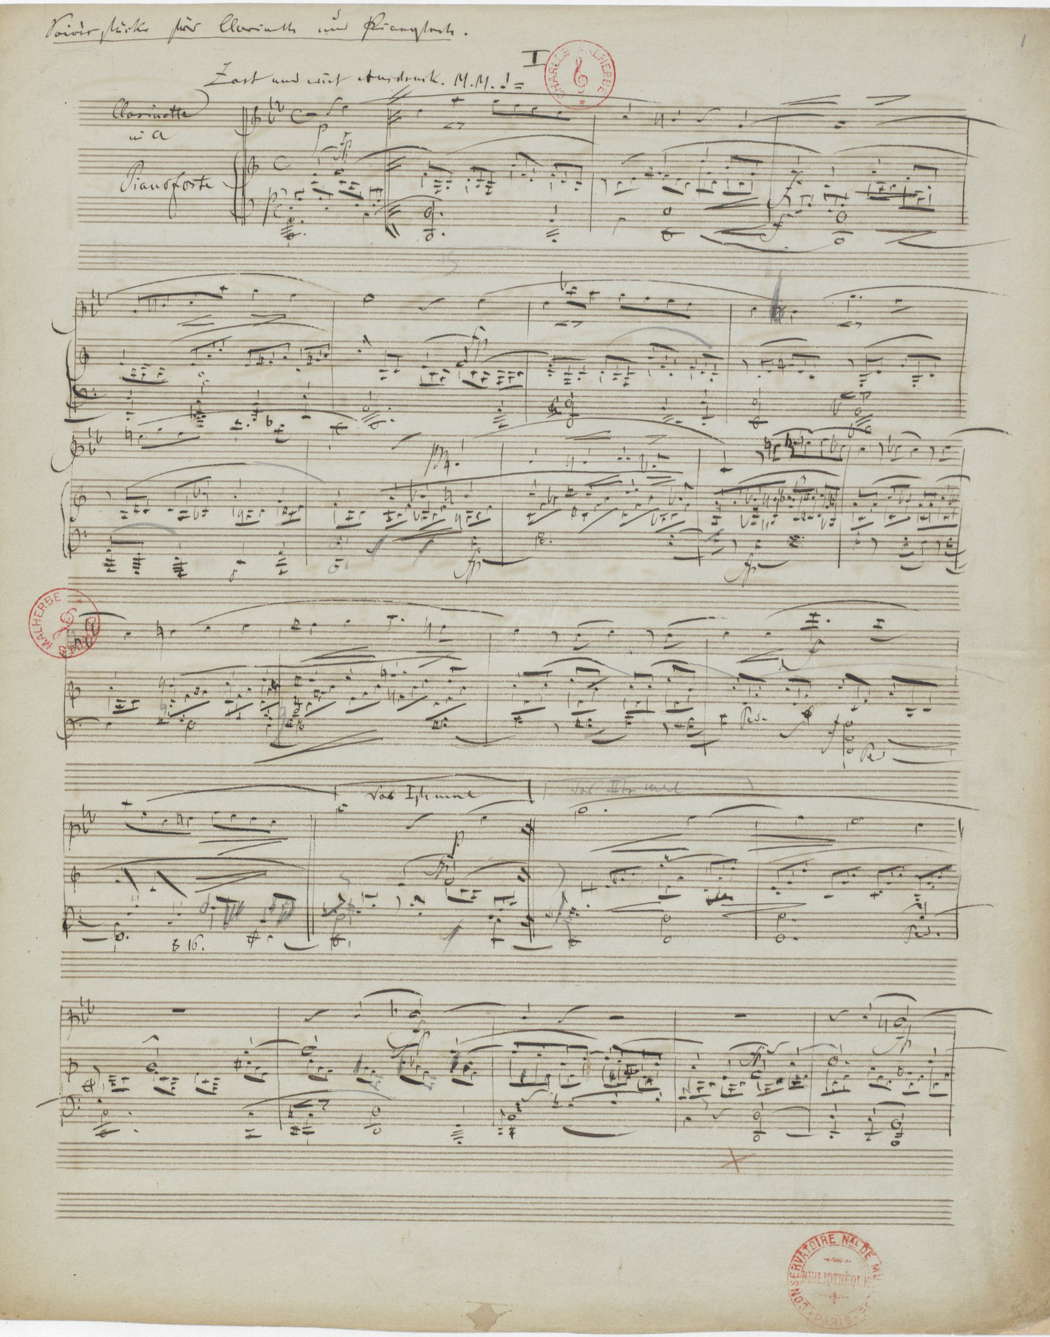 Robert Schumann: 'Fantasiestücke', Op 73, from IMSLP